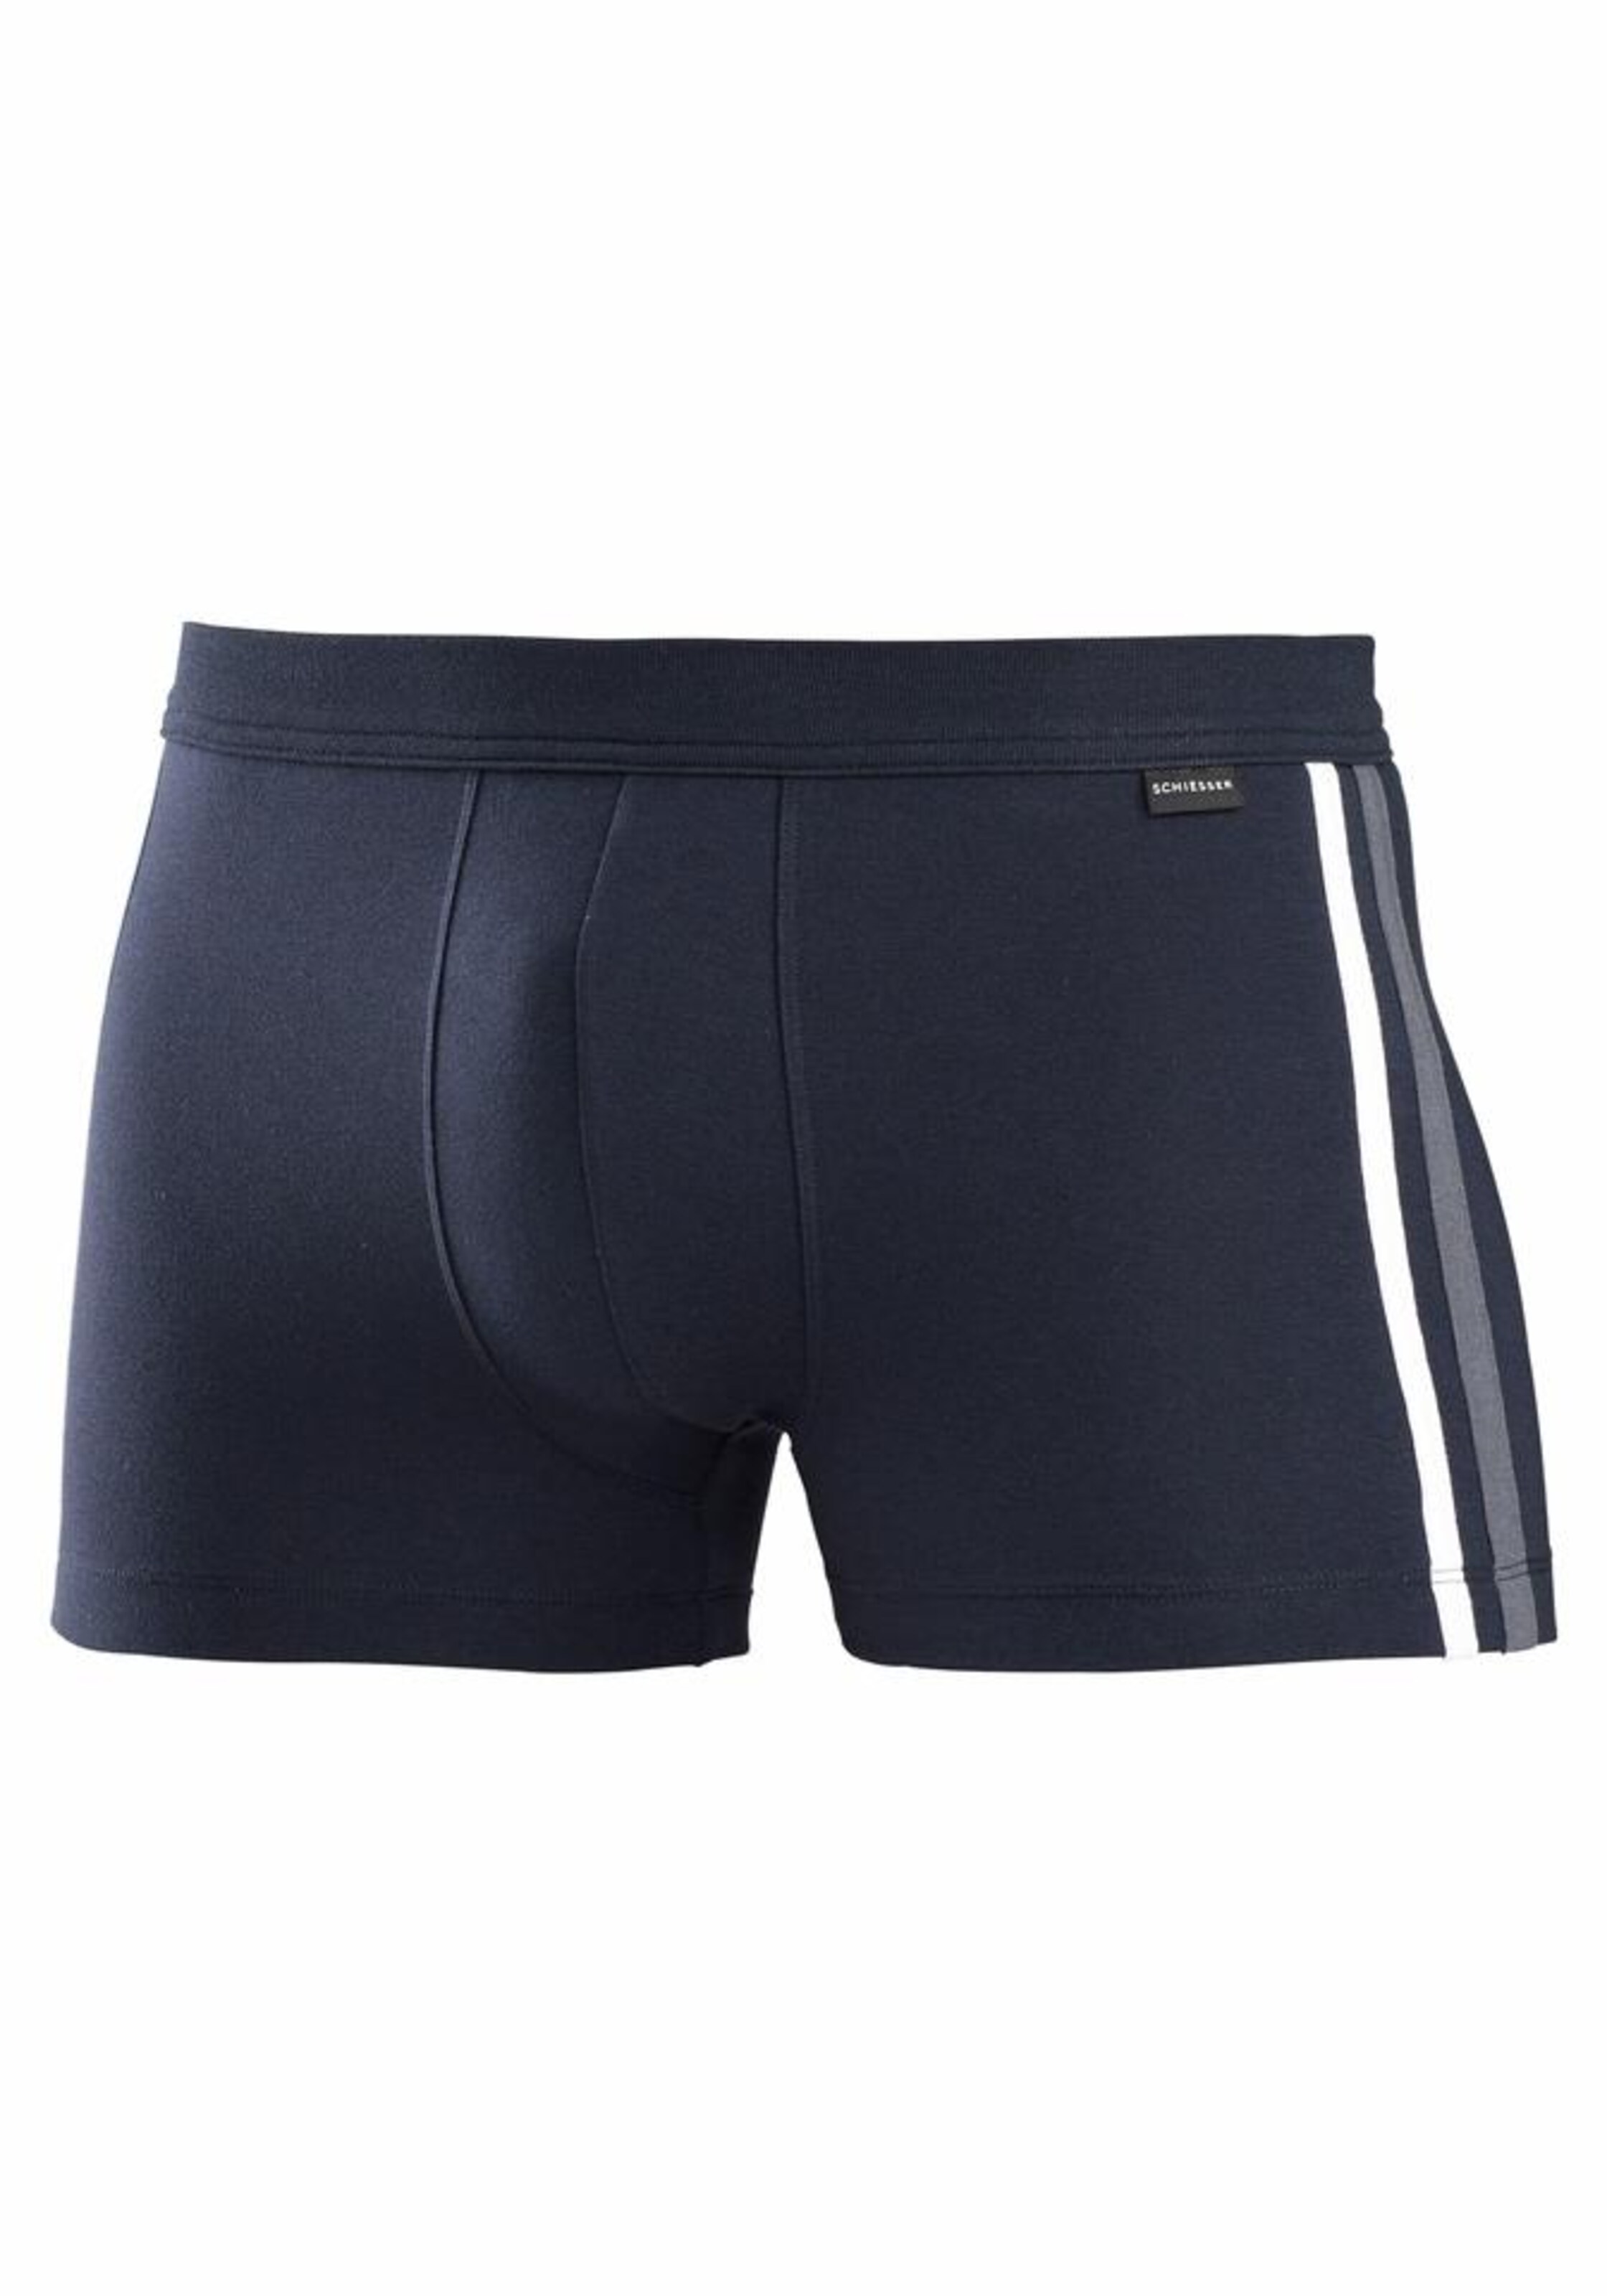 Männer Wäsche SCHIESSER Boxer Shorts mit Kontrastpipings in Dunkelblau - DV98567